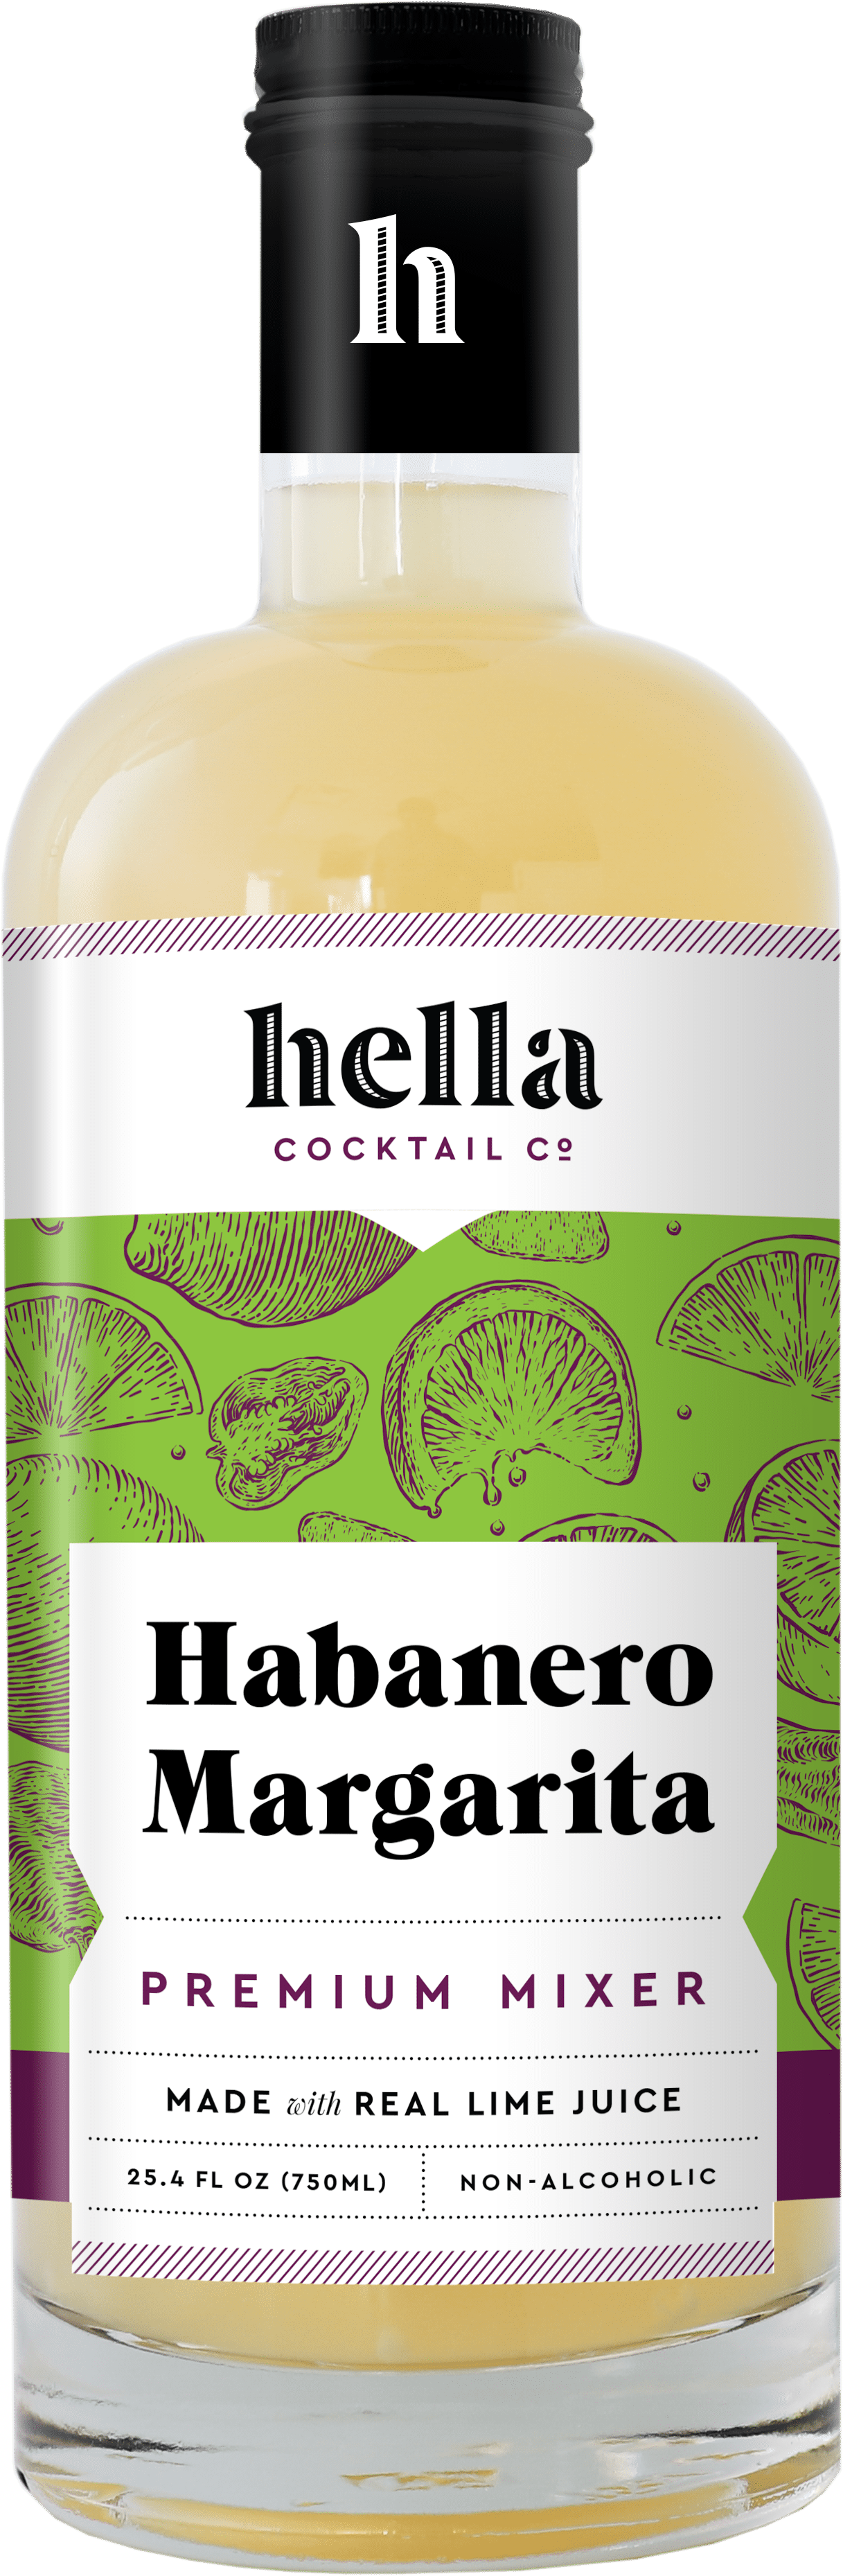 Hella Habanero Margarita Premium Mixer (750 ml) 6 units per case 3.5 lbs